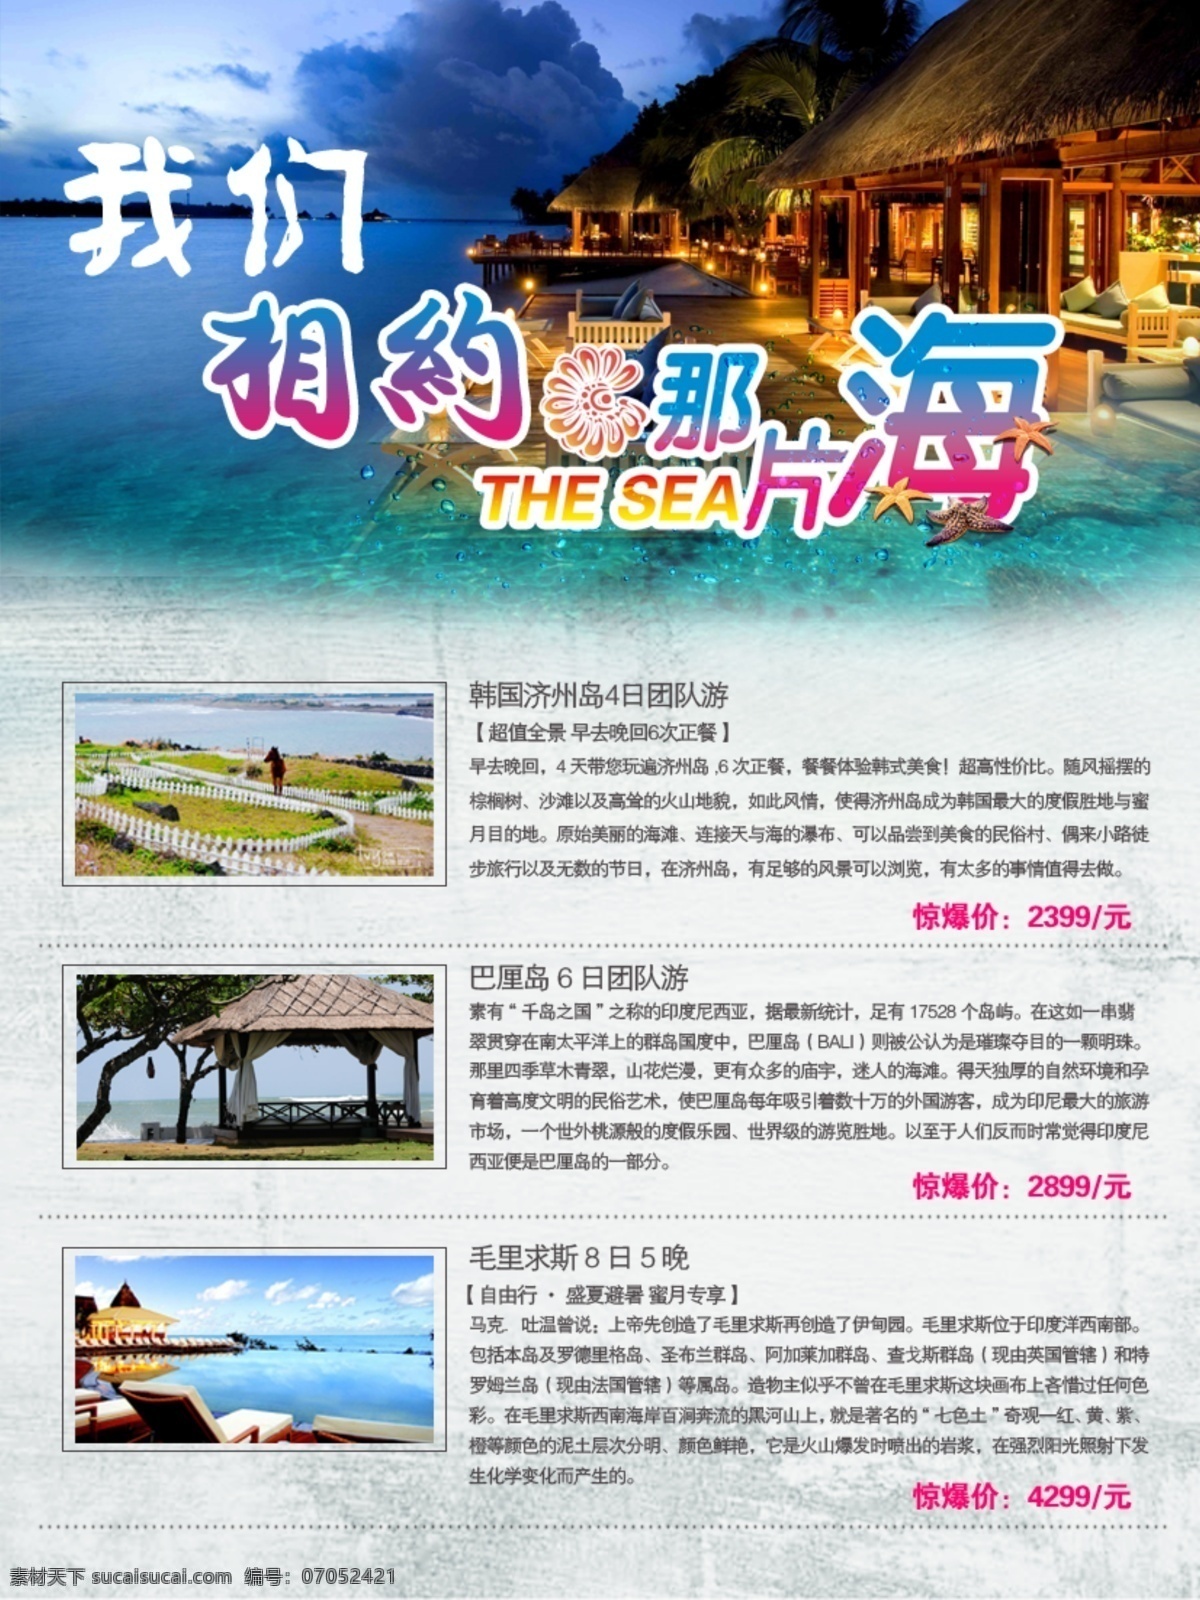 海岛旅游背面 旅游 彩页 宣传 网站 制作 印刷 旅游专题 广告设计模板 源文件